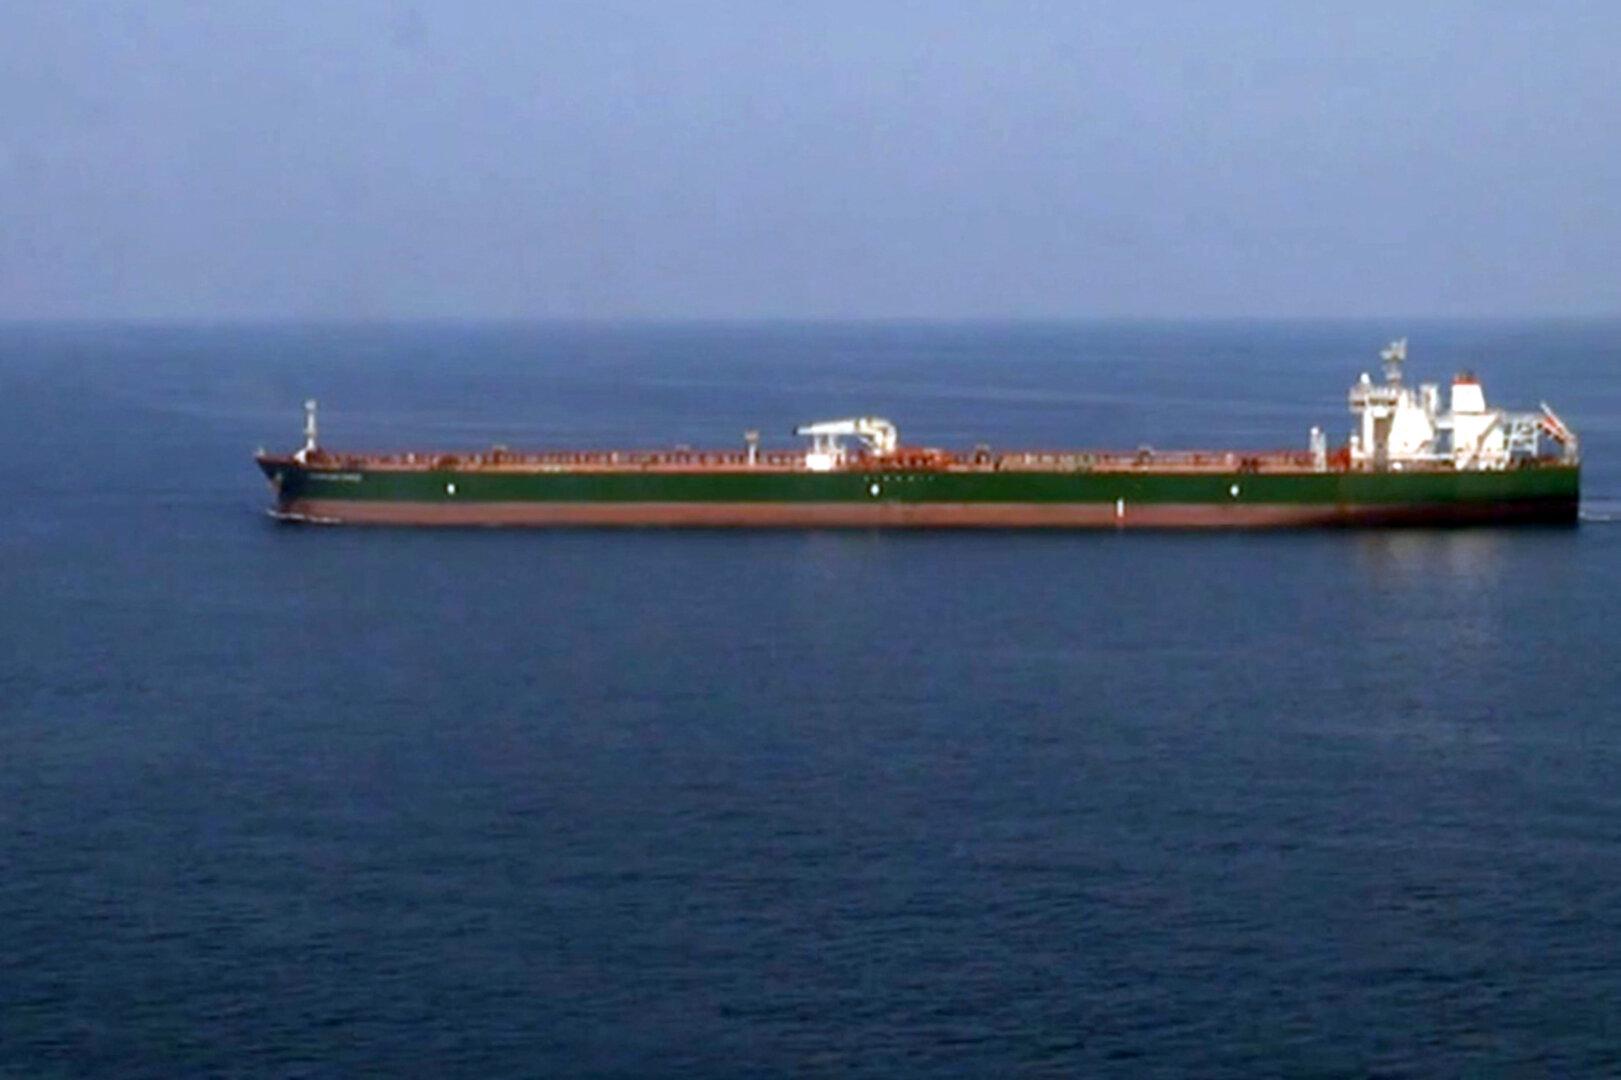 Unklar, ob Öl ausgetreten: Tanker vor omanischer Küste gekentert, 16 Personen vermisst